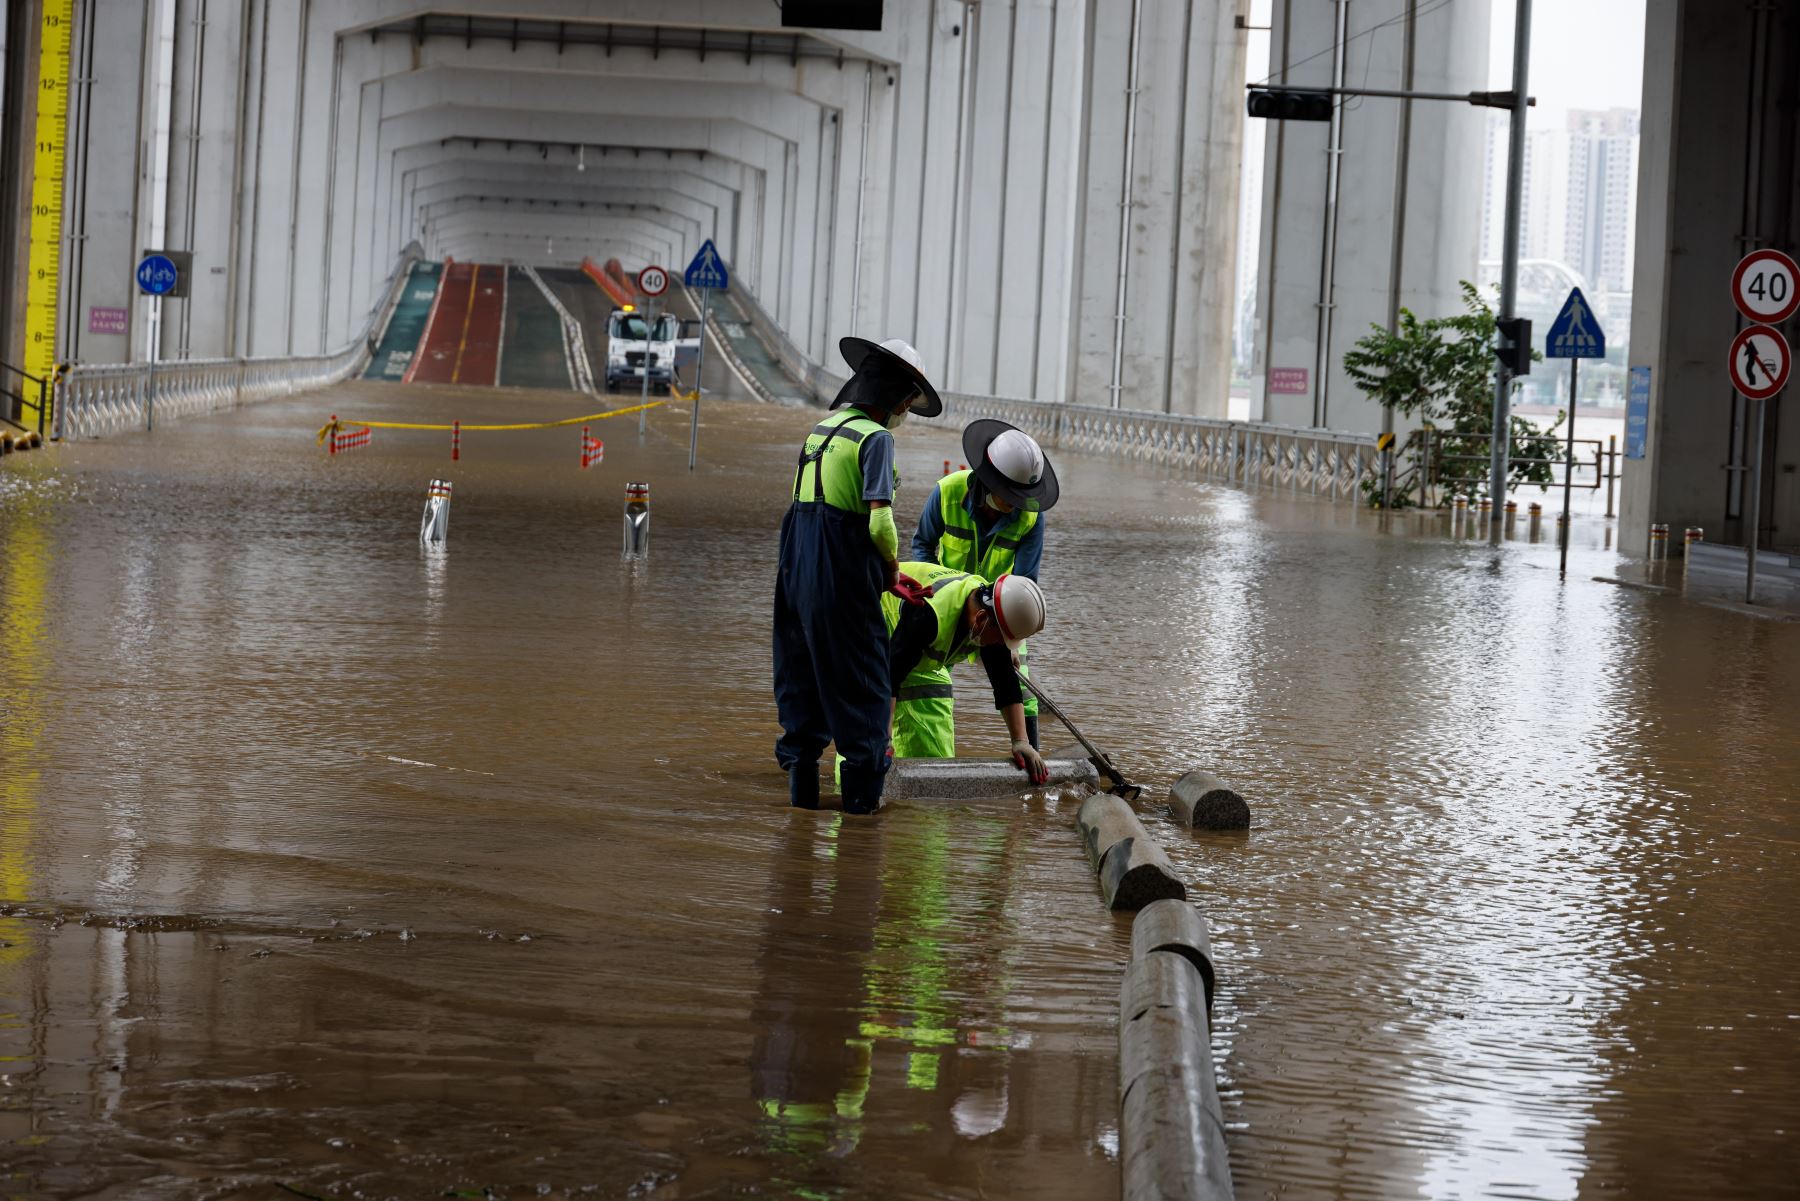 Trabajadores surcoreanos eliminan el lodo de una zona inundada debajo del puente Jamsu cerca del río Han en Seúl, Corea del Sur. Según los informes, al menos 13 personas murieron y otros 13 desaparecieron luego de que fuertes lluvias desencadenaran inundaciones y deslizamientos de lodo en el país. 

Foto: EFE